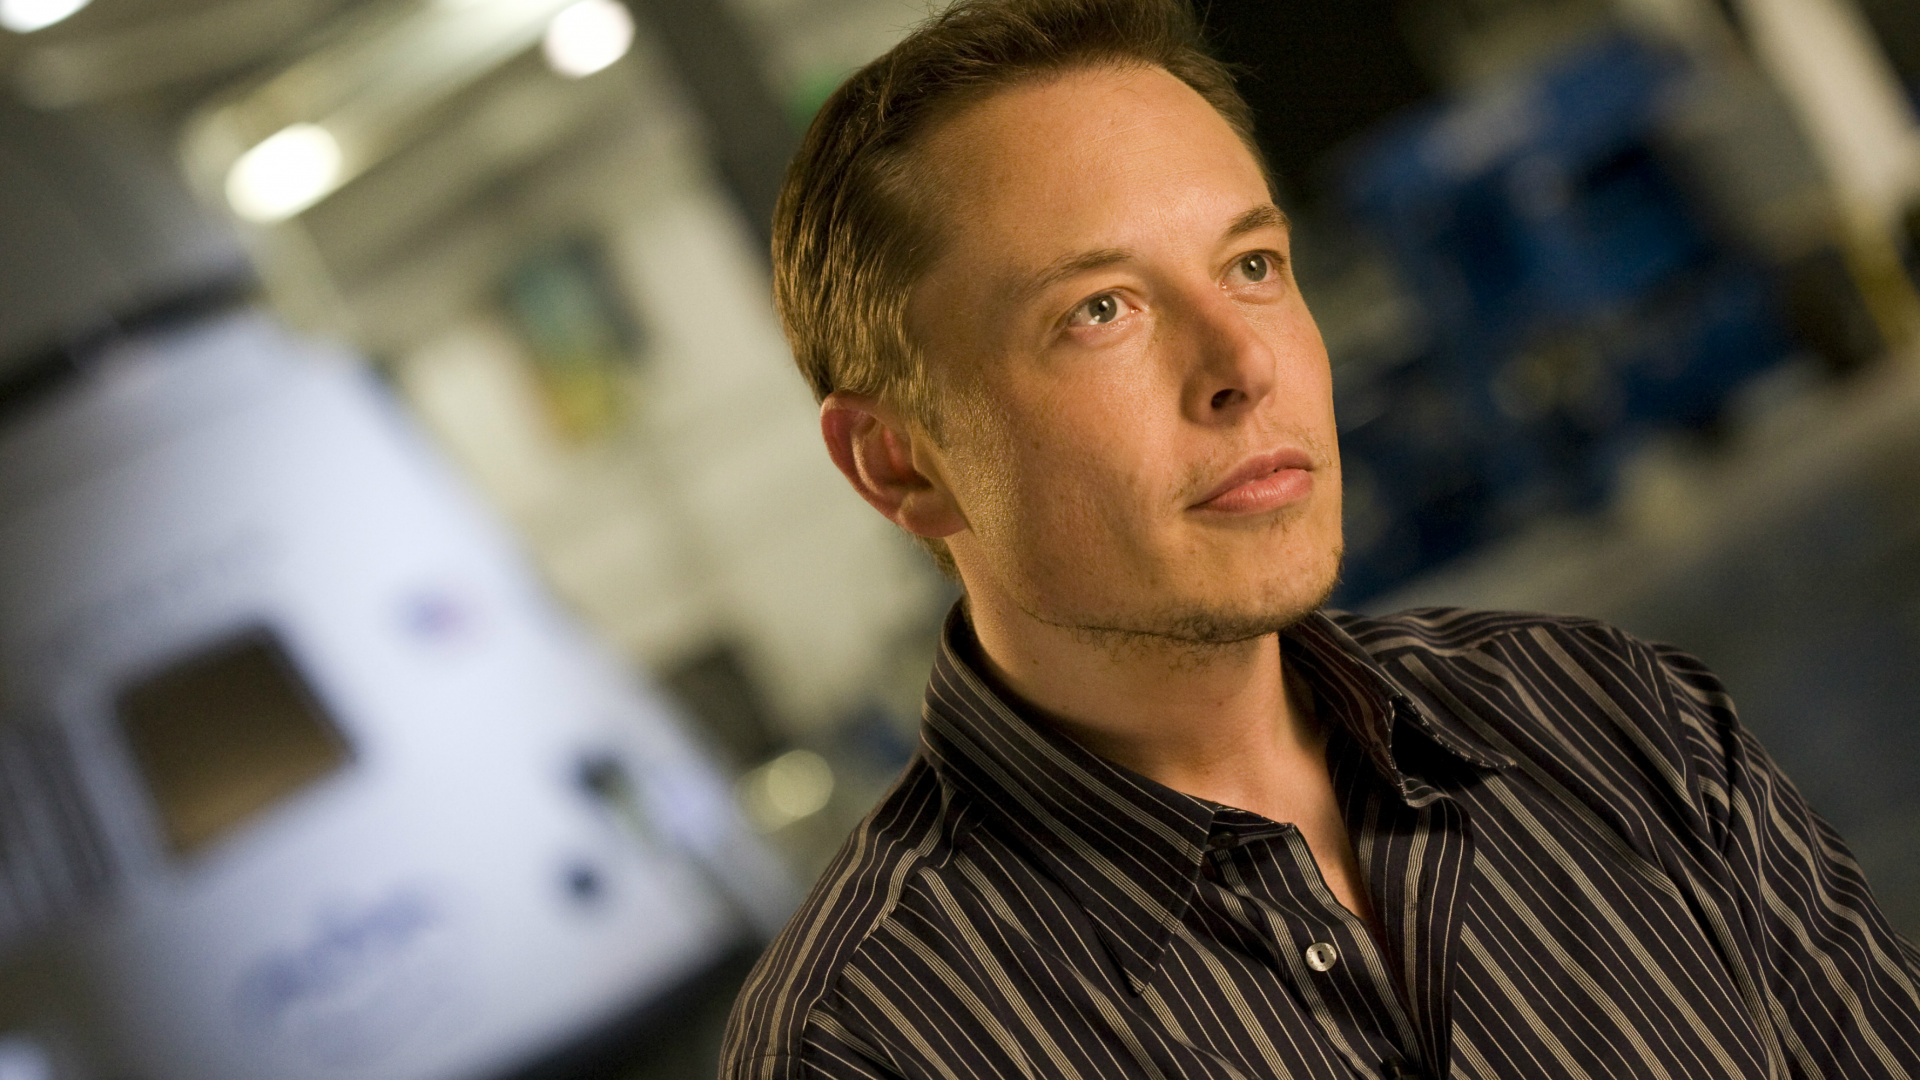 Elon Musk, SpaceX, Hyperloop, Trabajador de Cuello Blanco, el Vello Facial. Wallpaper in 1920x1080 Resolution